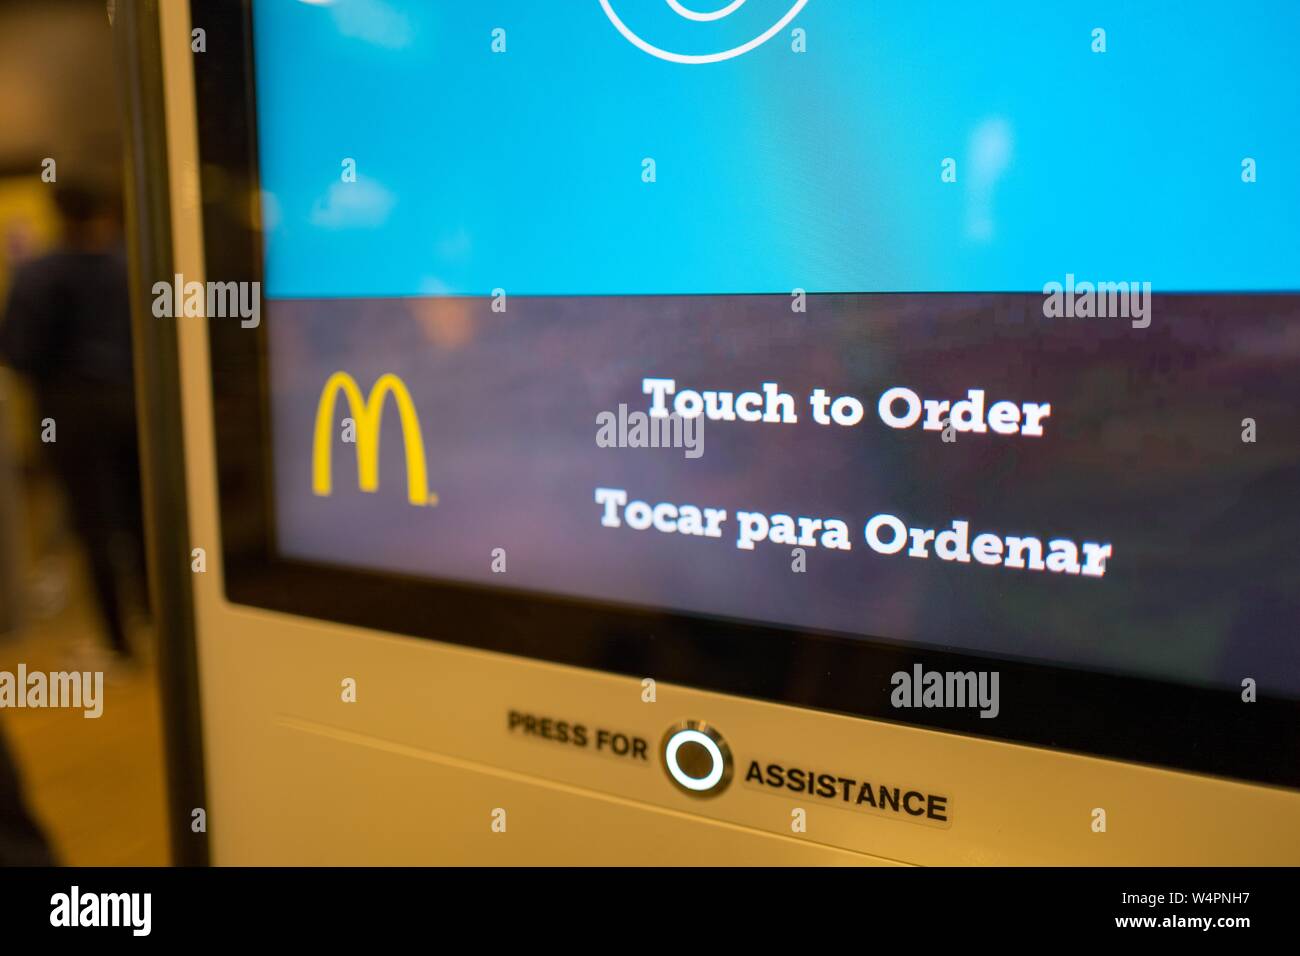 Pantalla táctil automatizado sistema de pedidos en el restaurante de comida rápida McDonald's en Santa Nella, California, lo que permite a los visitantes hacer su pedido y recibir sus alimentos a través de una interfaz de pantalla táctil de gran tamaño, 24 de octubre de 2018. () Foto de stock